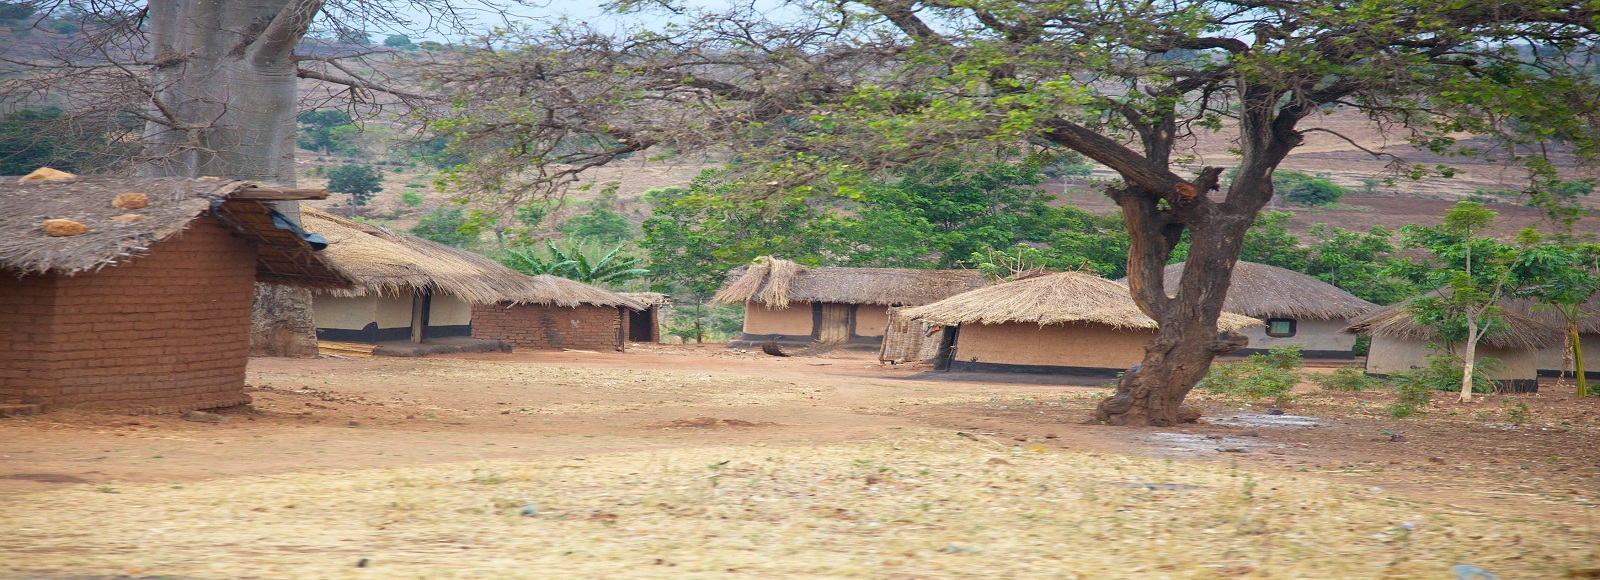 Ofertas de Traslados en Malawi. Traslados económicos en Malawi 